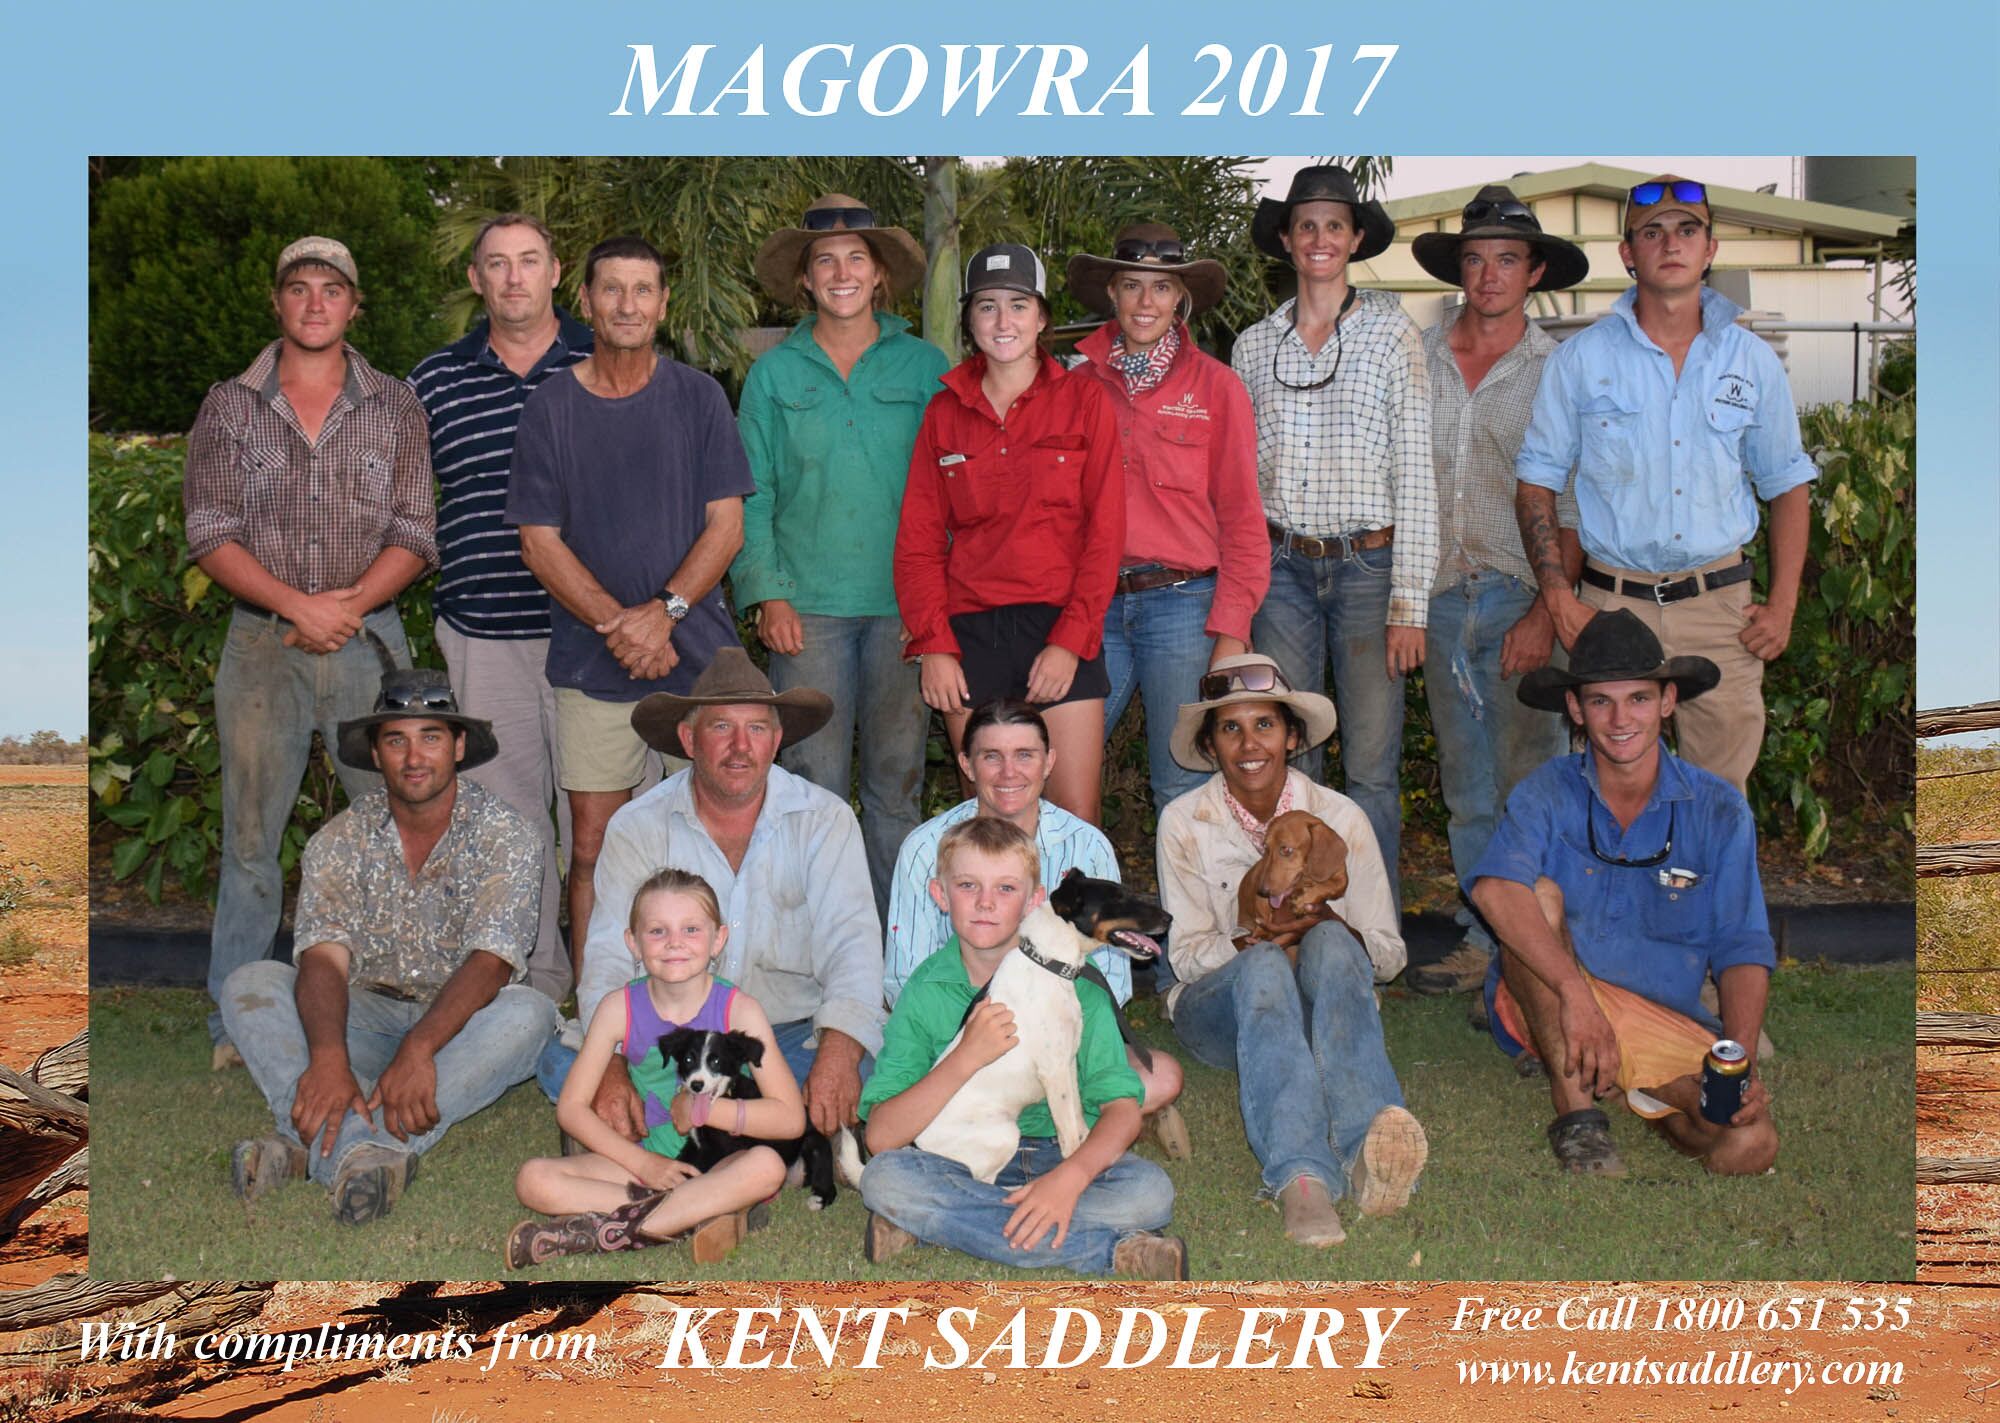 Queensland - Magowra 30